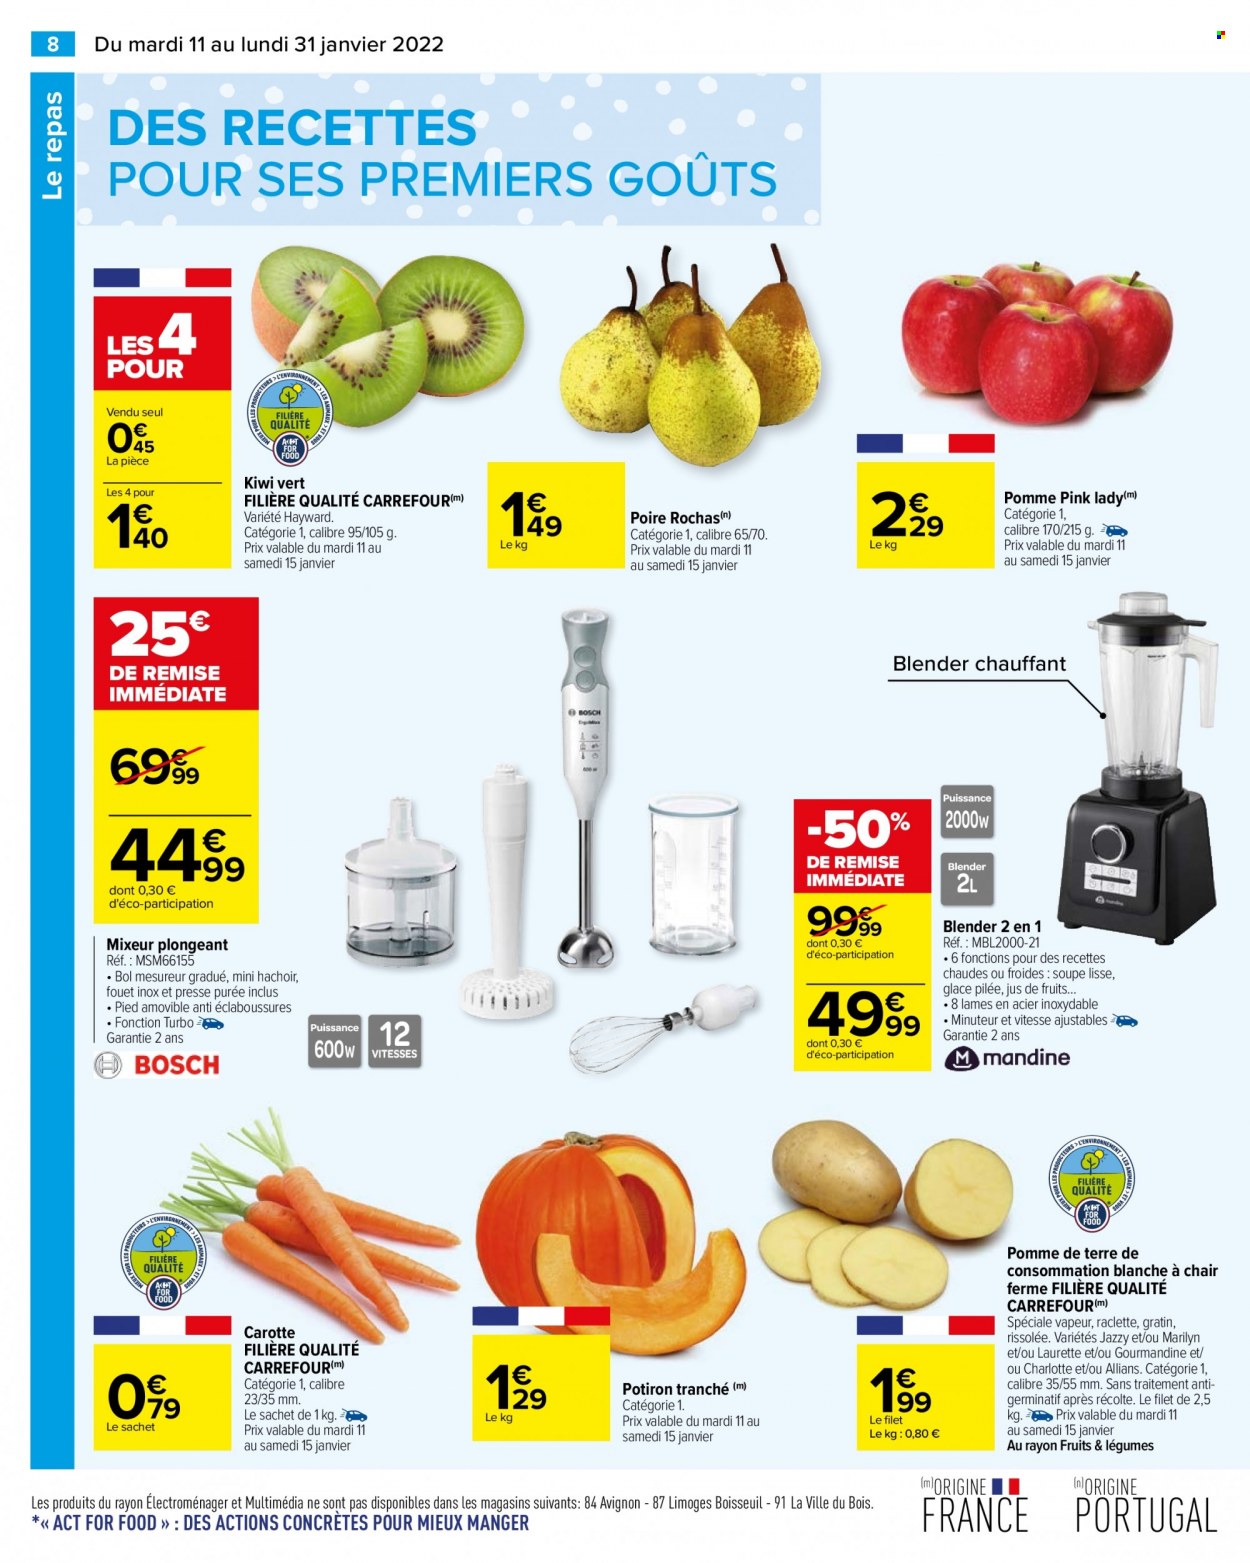 thumbnail - Catalogue Carrefour Hypermarchés - 11/01/2022 - 31/01/2022 - Produits soldés - kiwi, carotte, potimarron, pommes de terre, glace, hachoir, fouet, blender, blender chauffant, mixeur. Page 8.